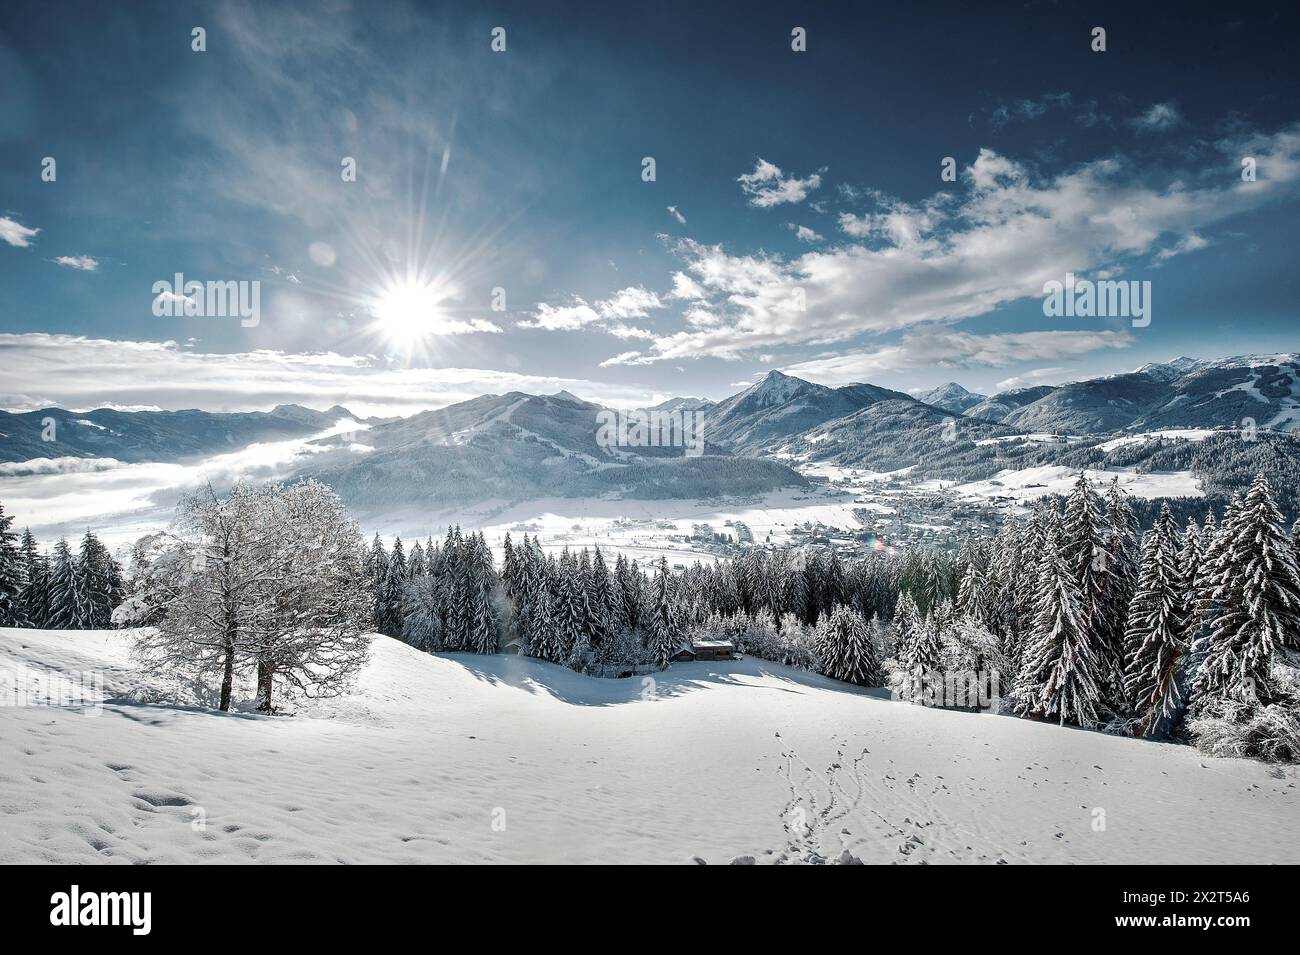 Autriche, Salzburger Land, Altenmarkt im Pongau, le soleil brille sur les montagnes enneigées Banque D'Images